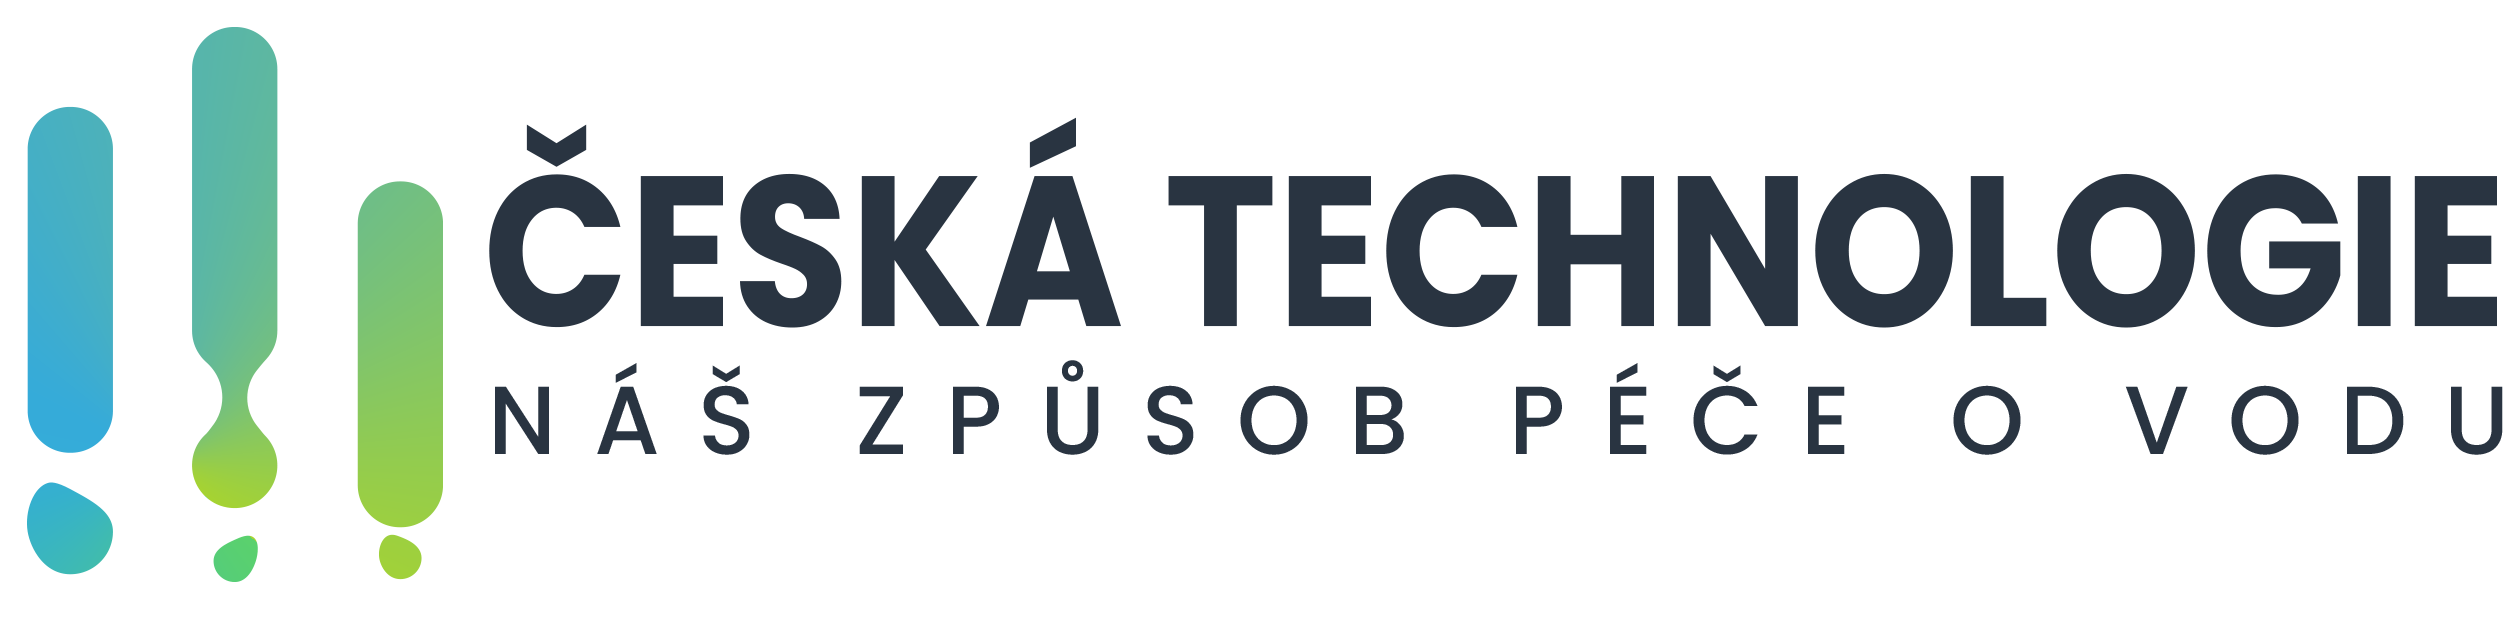 Česká technologie